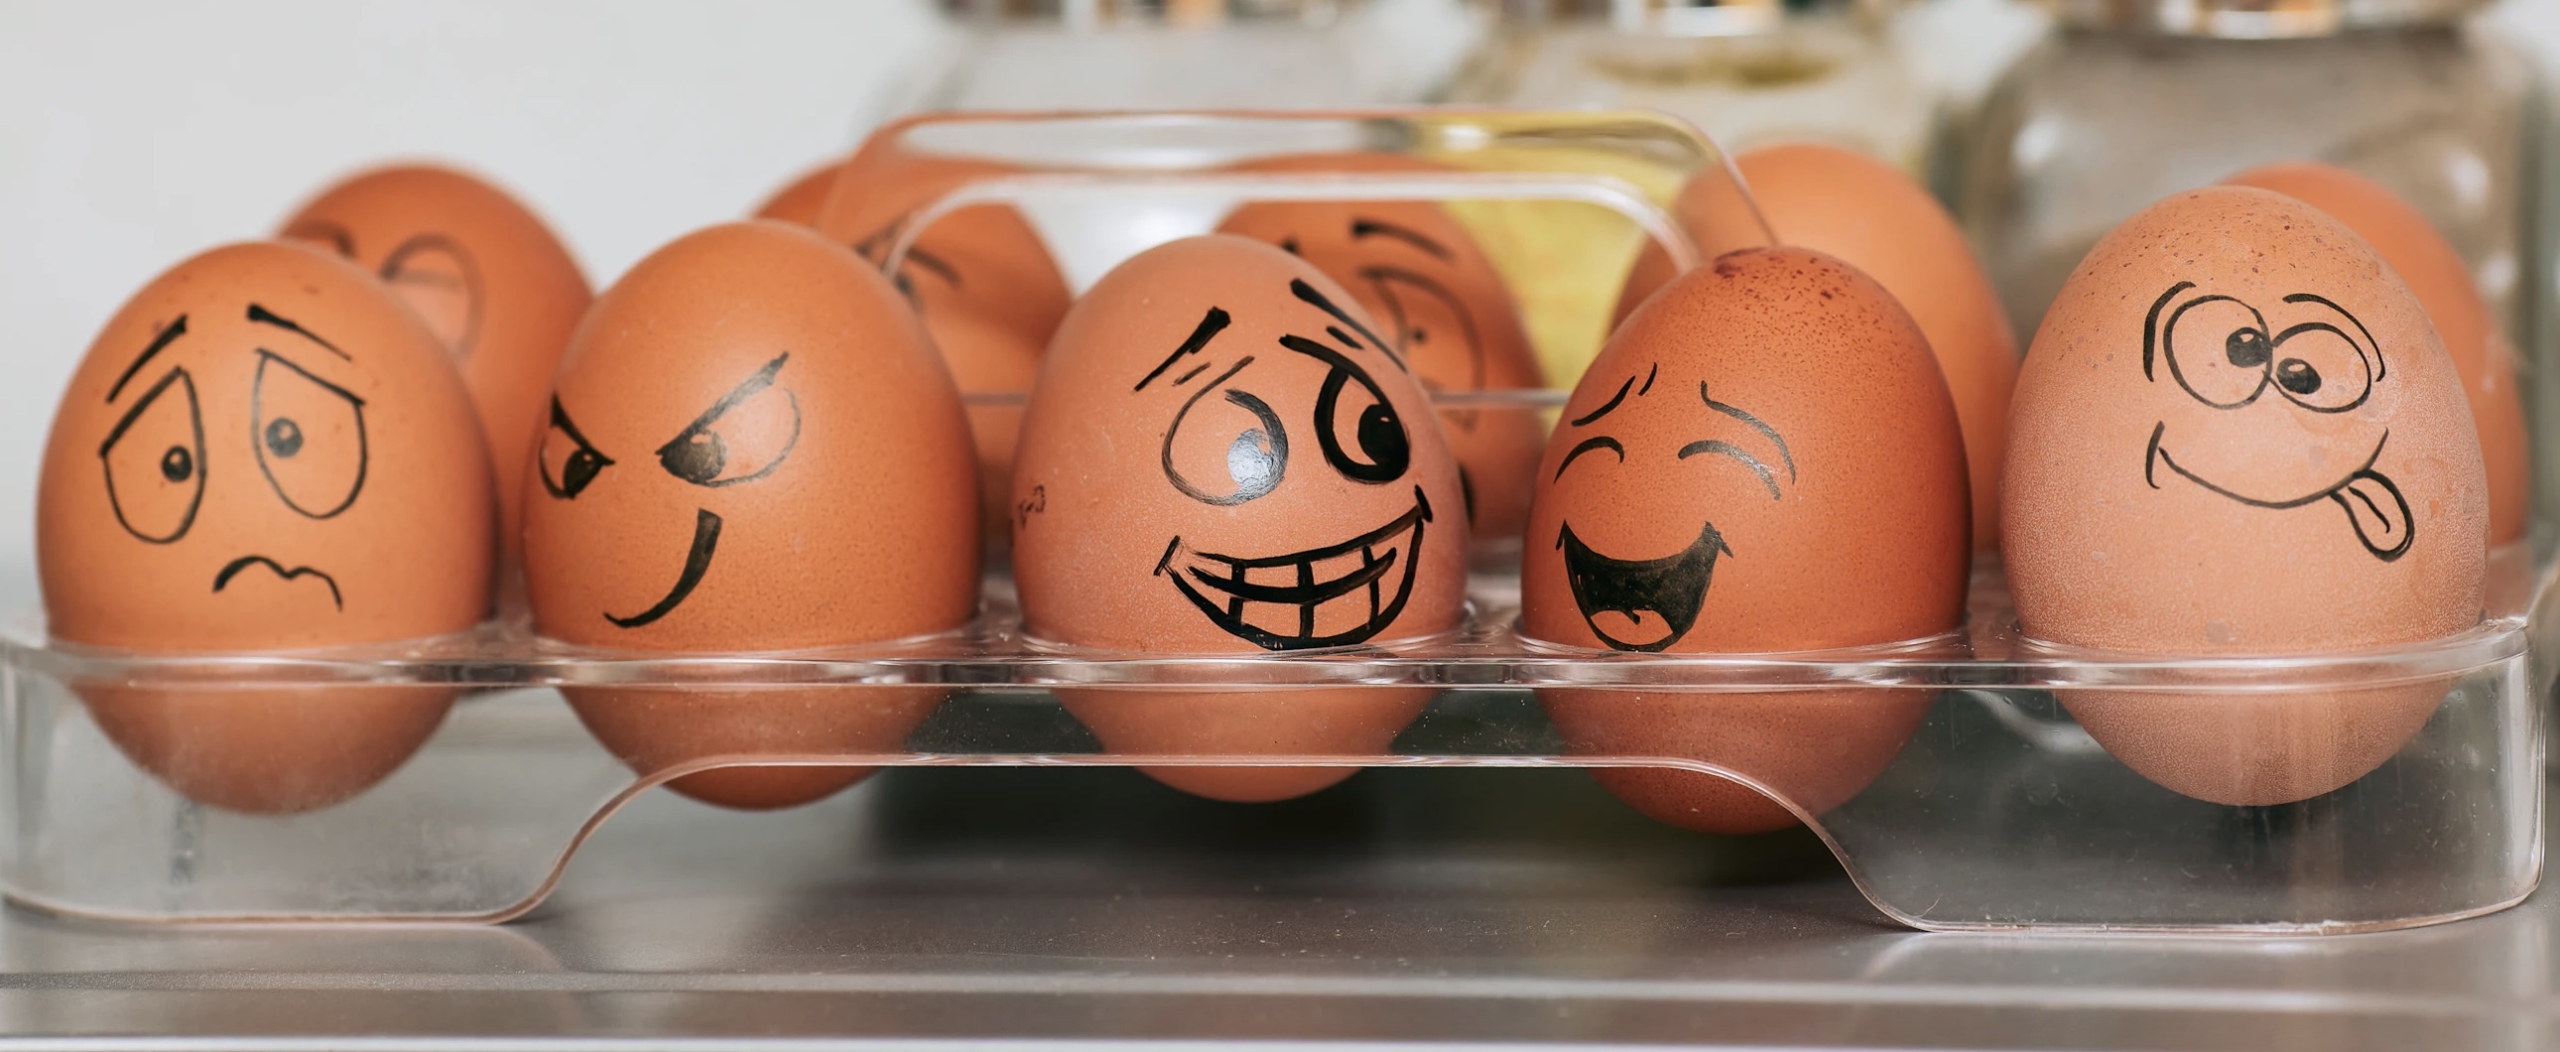 Торговые сети массово проверят из-за цен на яйца: ФАС взяла след